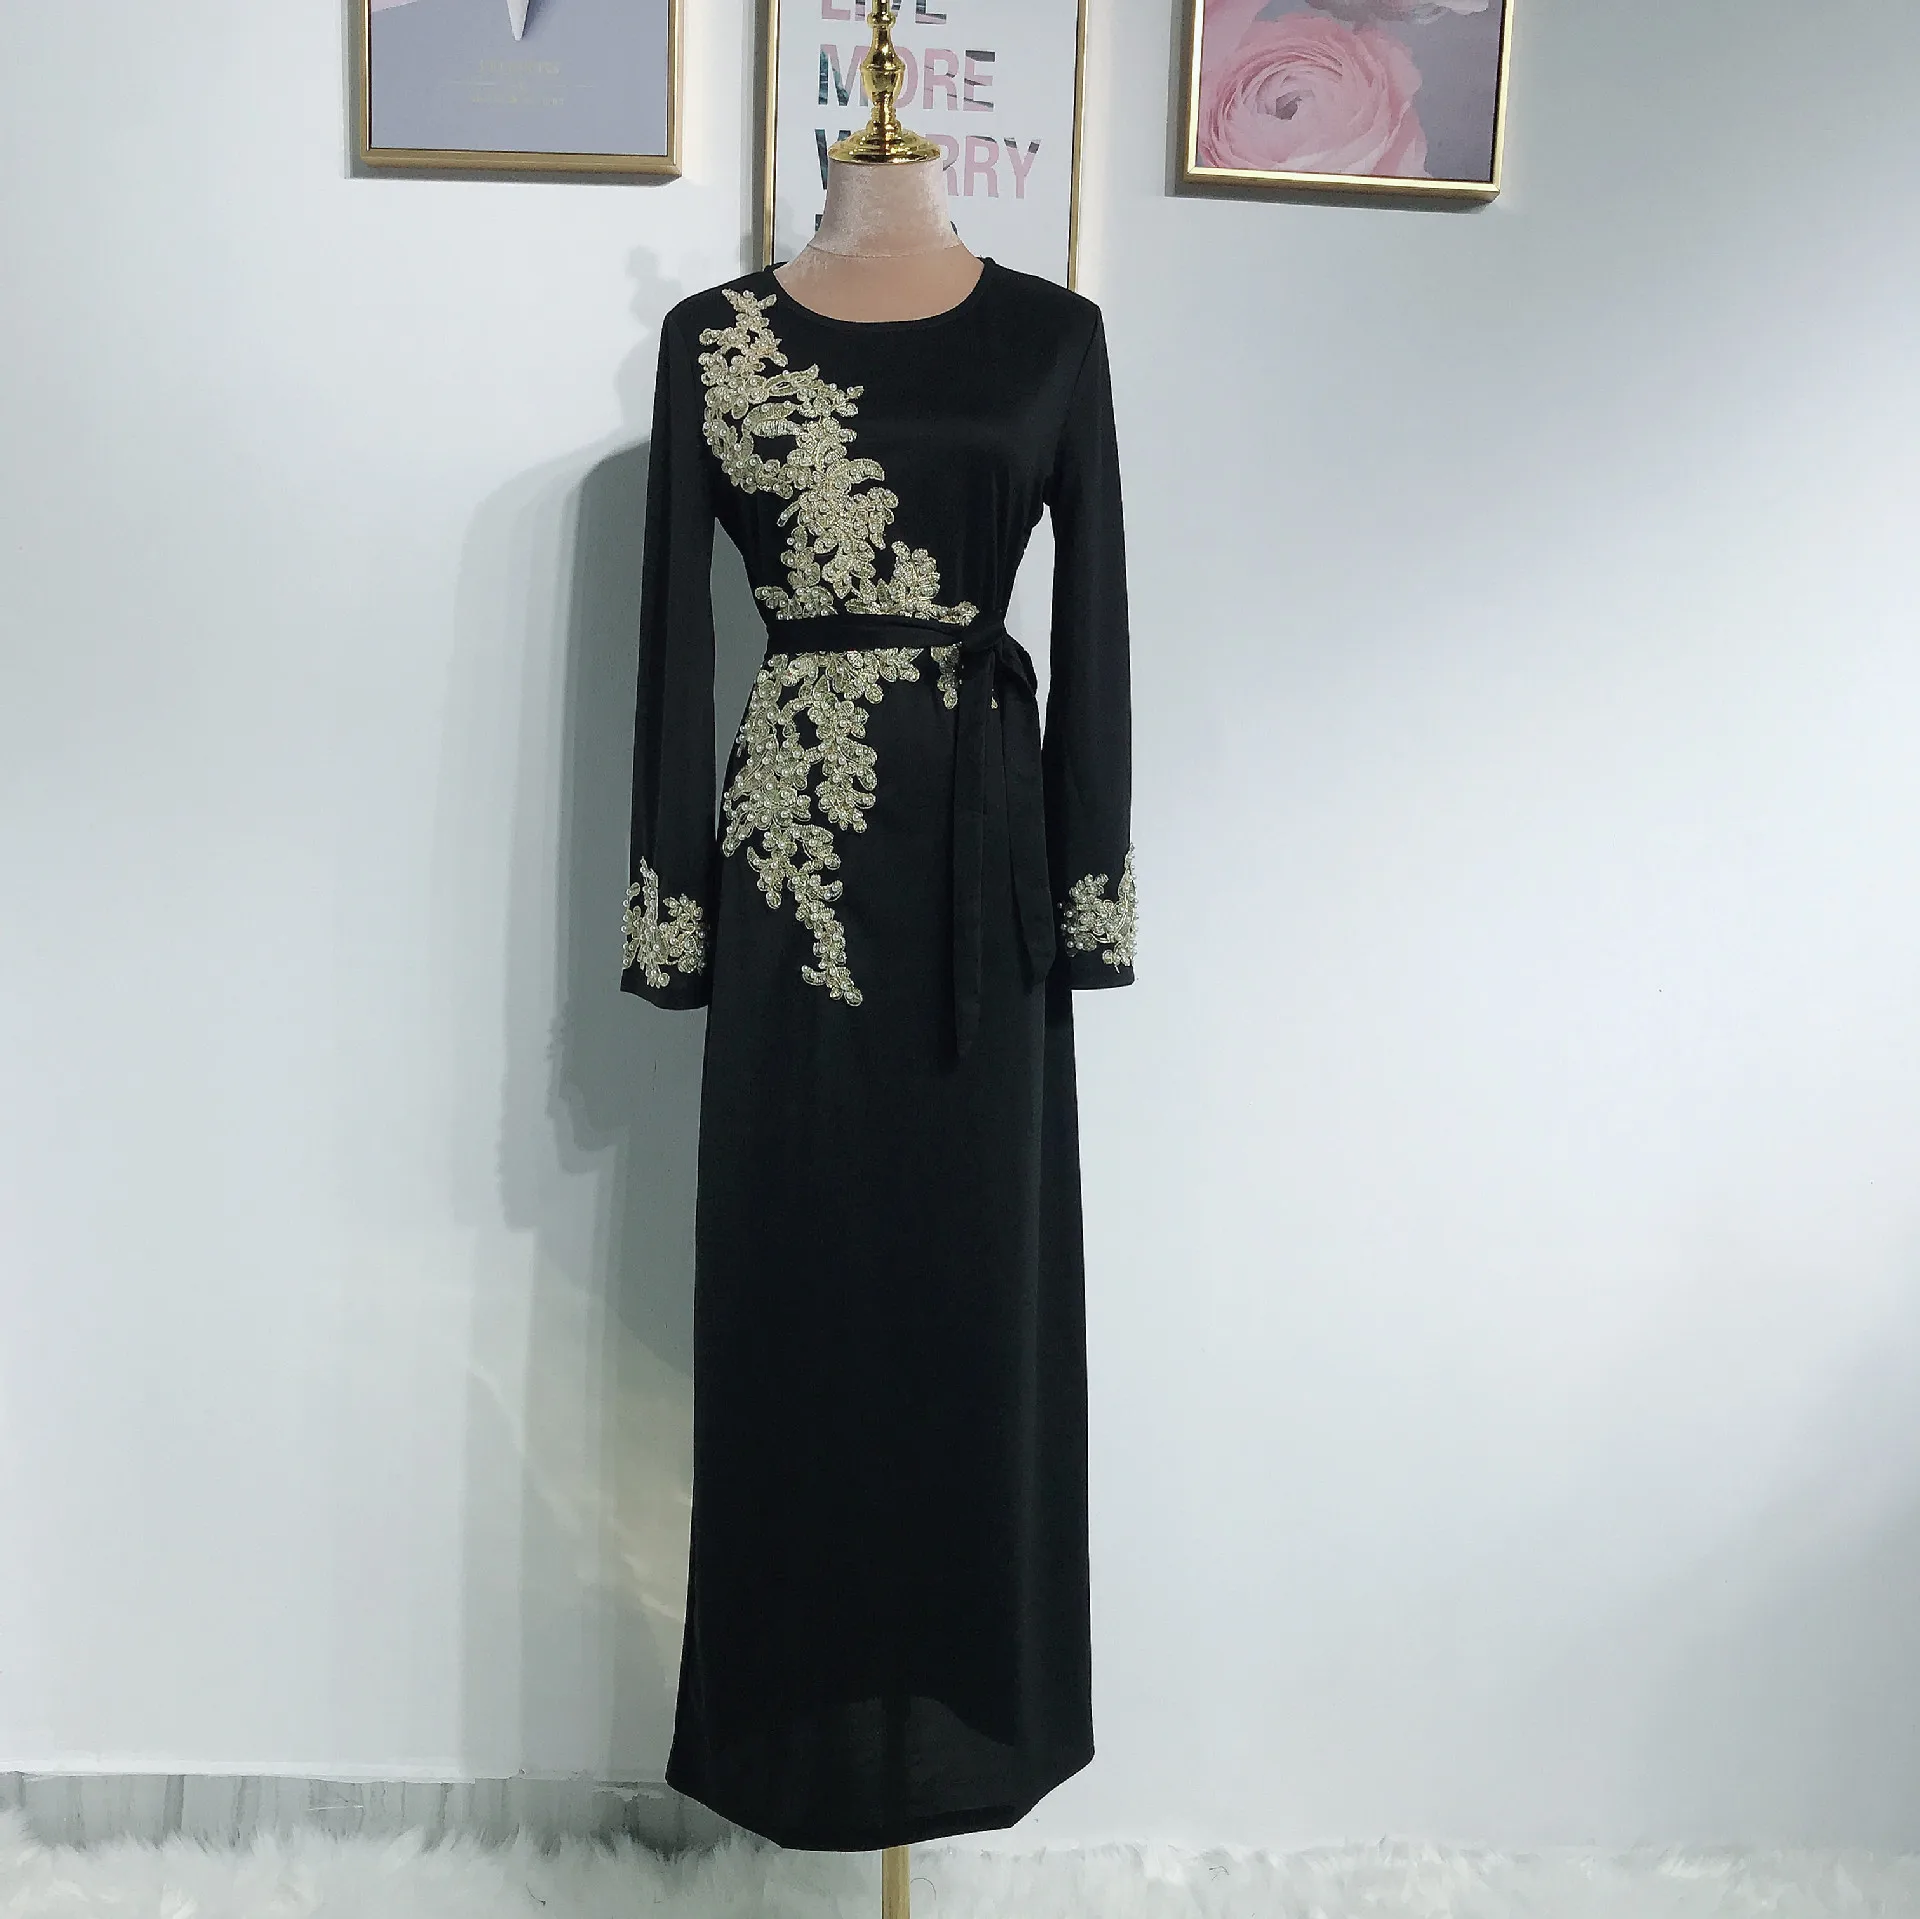 Абая для женщин Бангладеш Вышивка мусульманское платье ХИДЖАБ КАФТАН абайя Женская одежда в мусульманском стиле Дубай Катара ОАЭ Исламская одежда